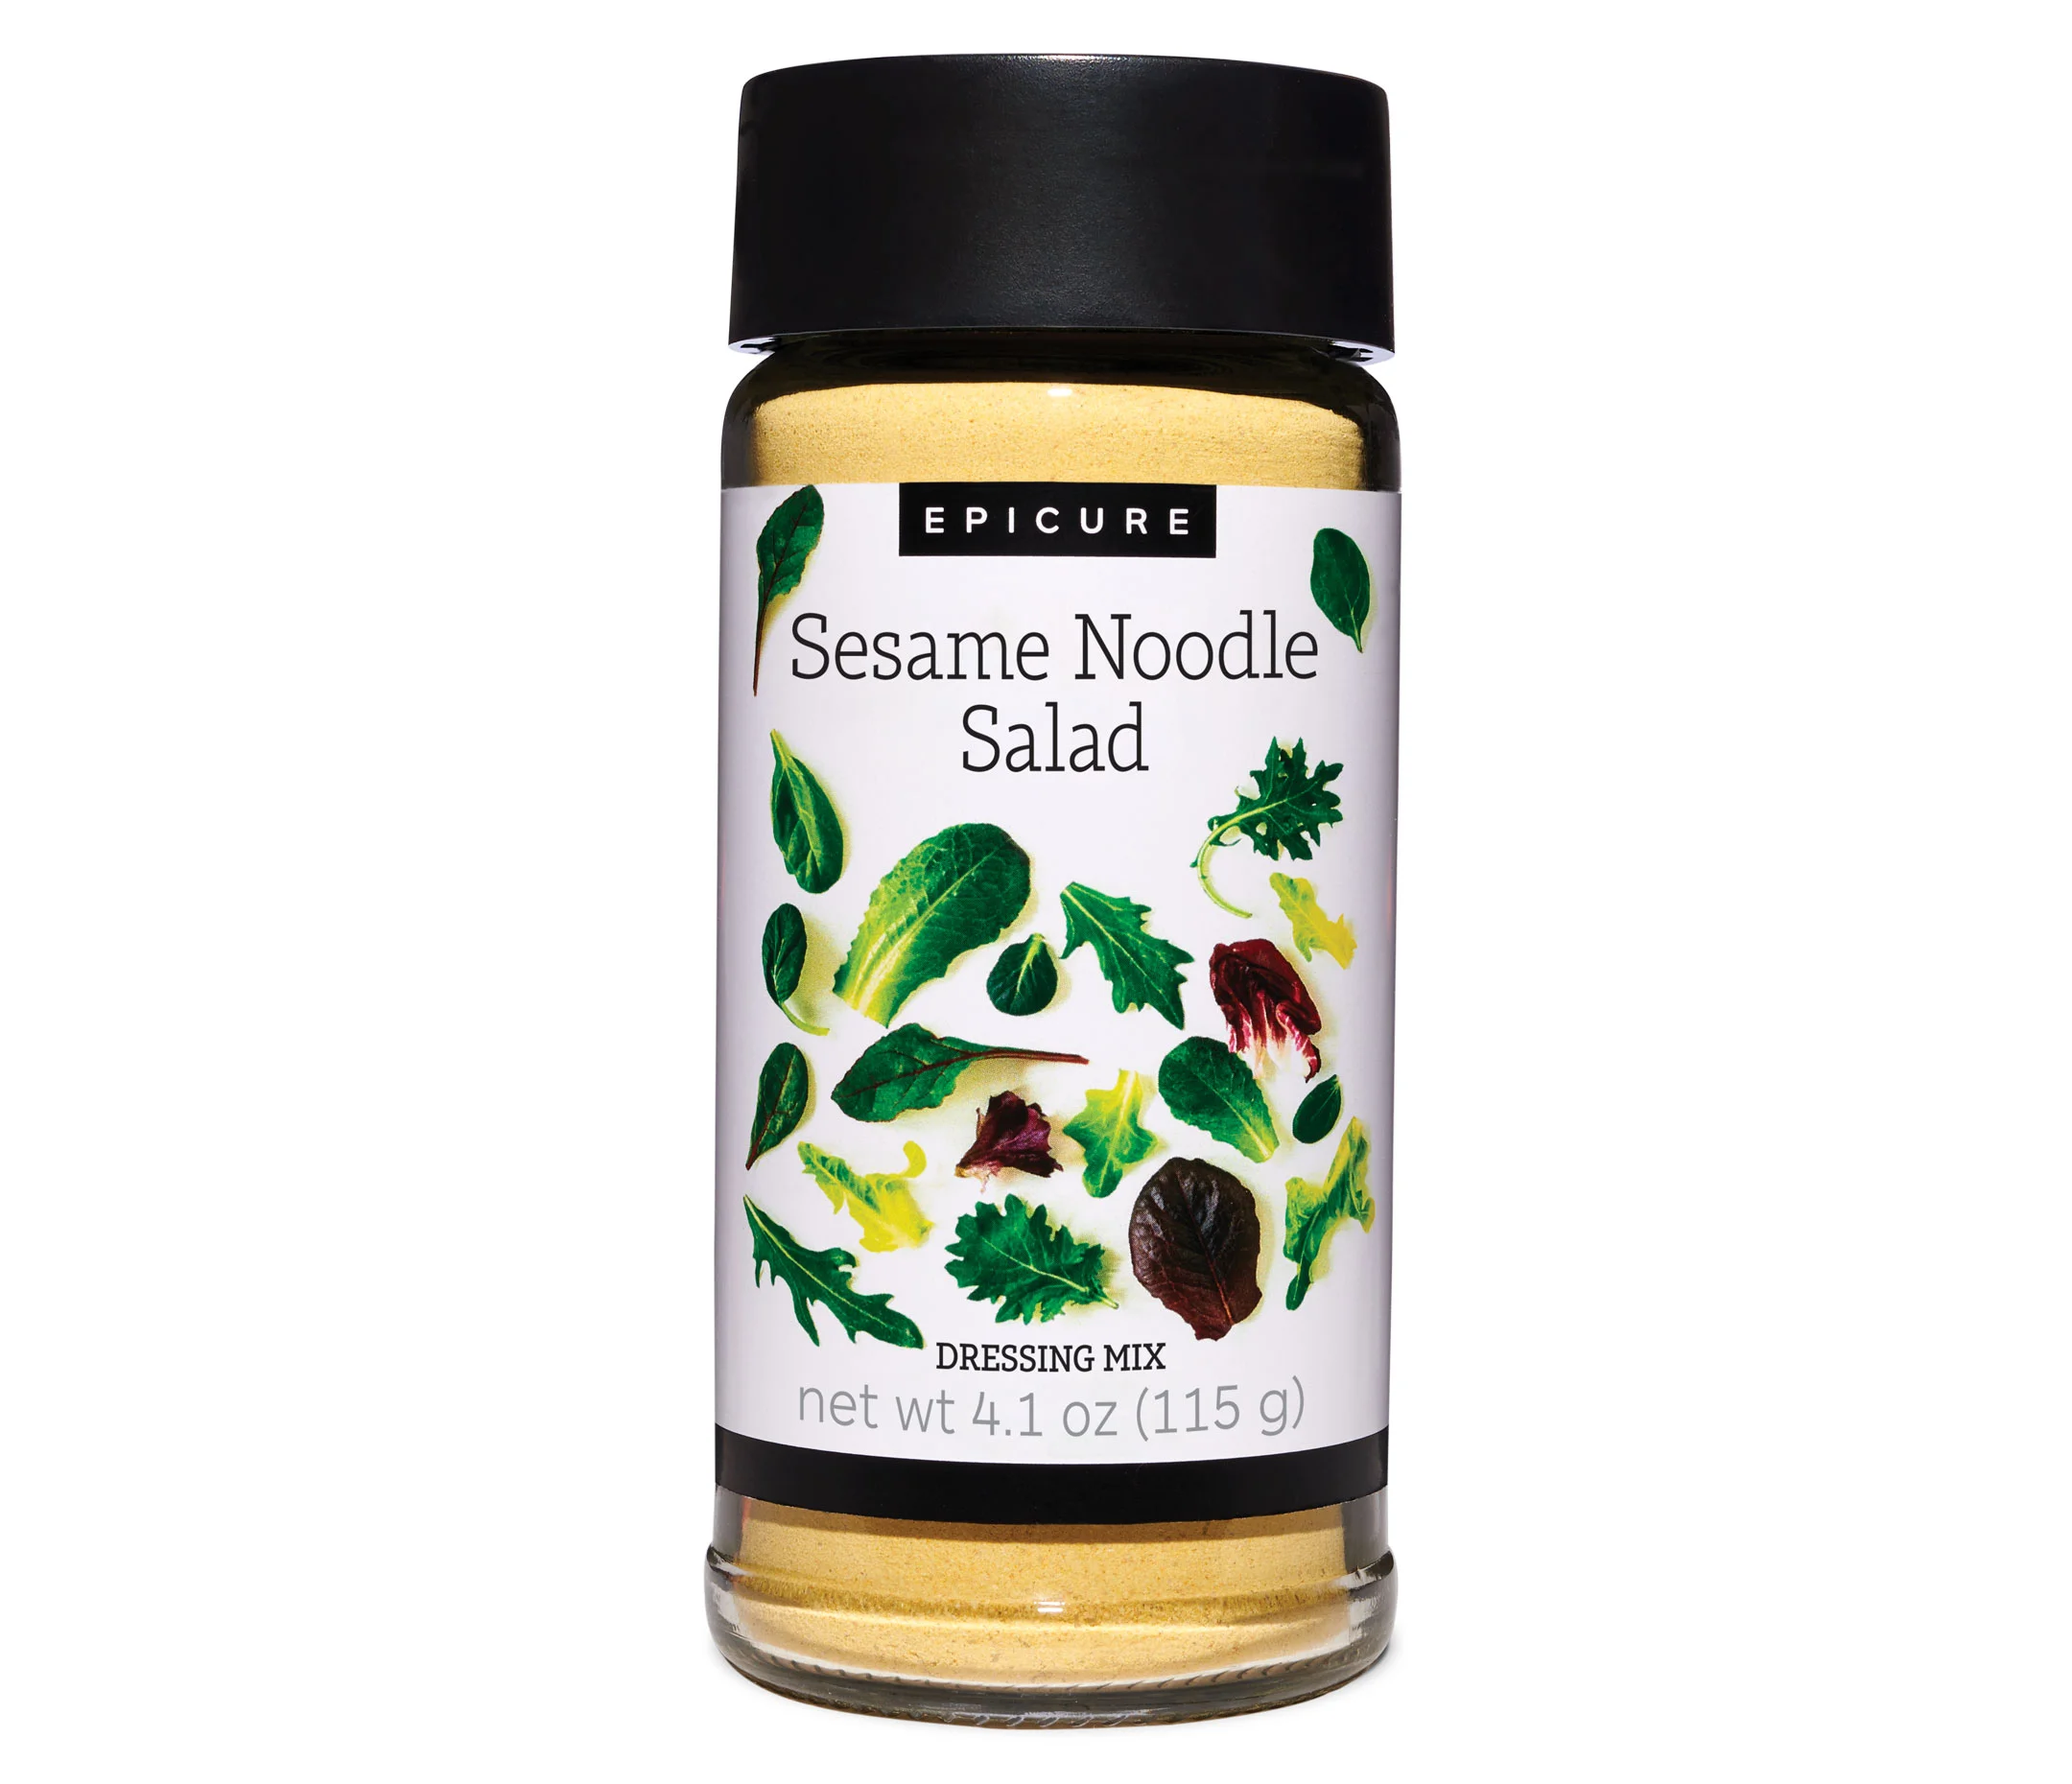 Sesame Noodle Salad Dressing Mix